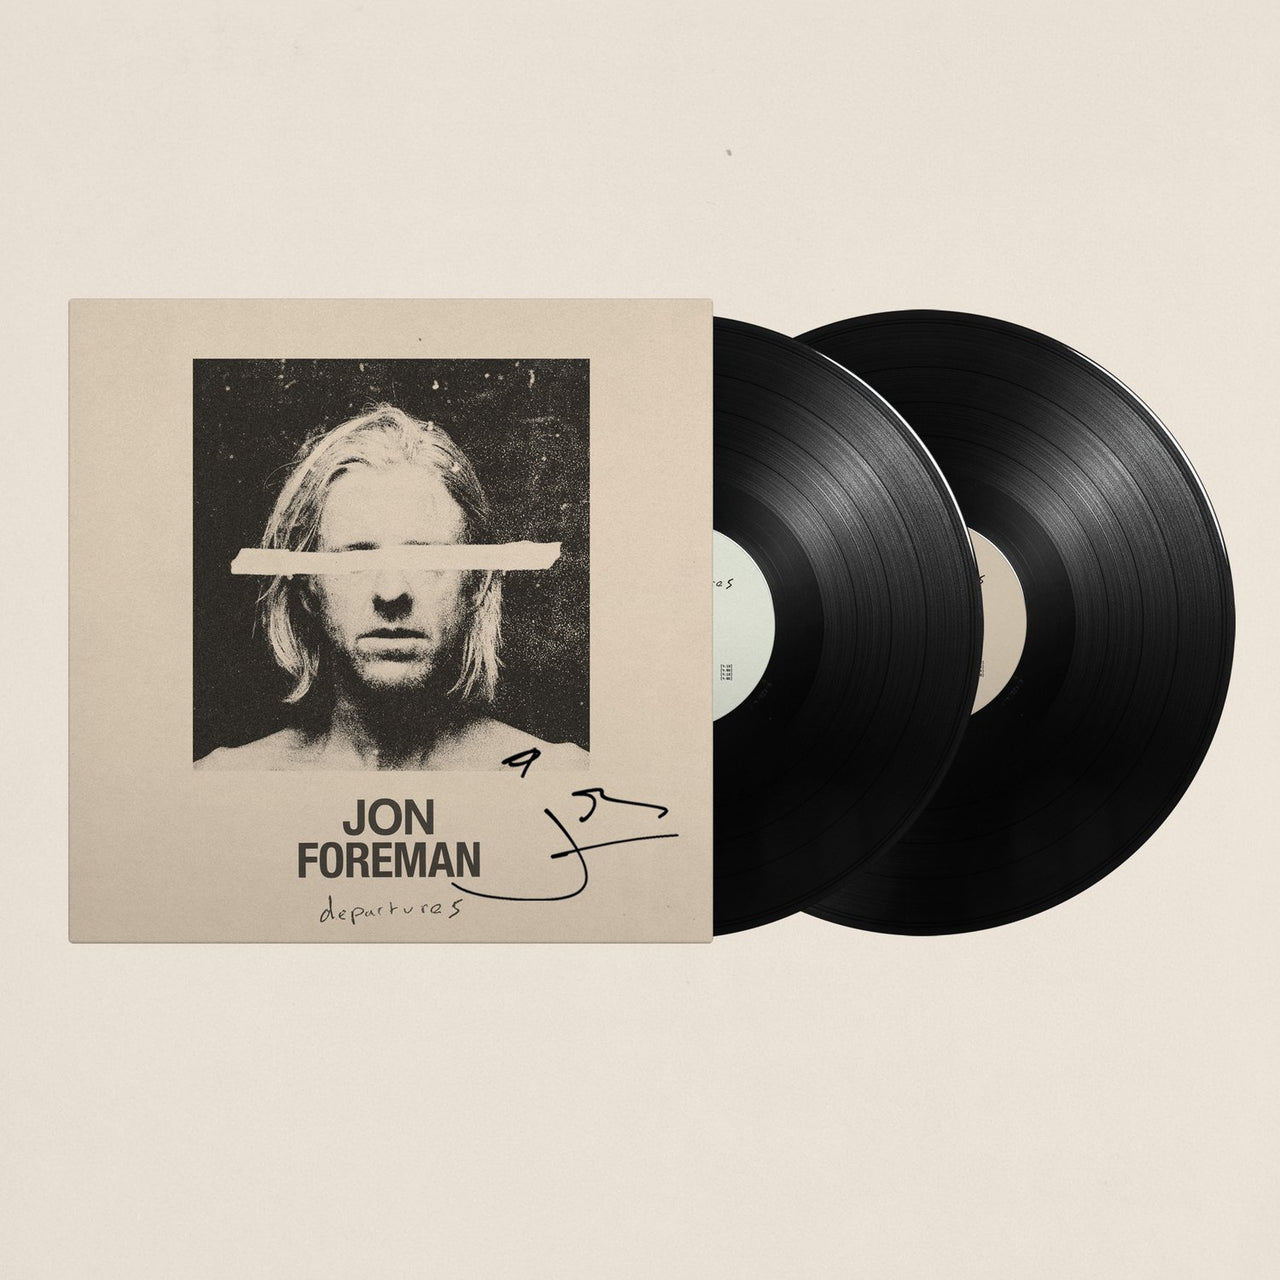 Jon Foreman: Departures Vinyl LP